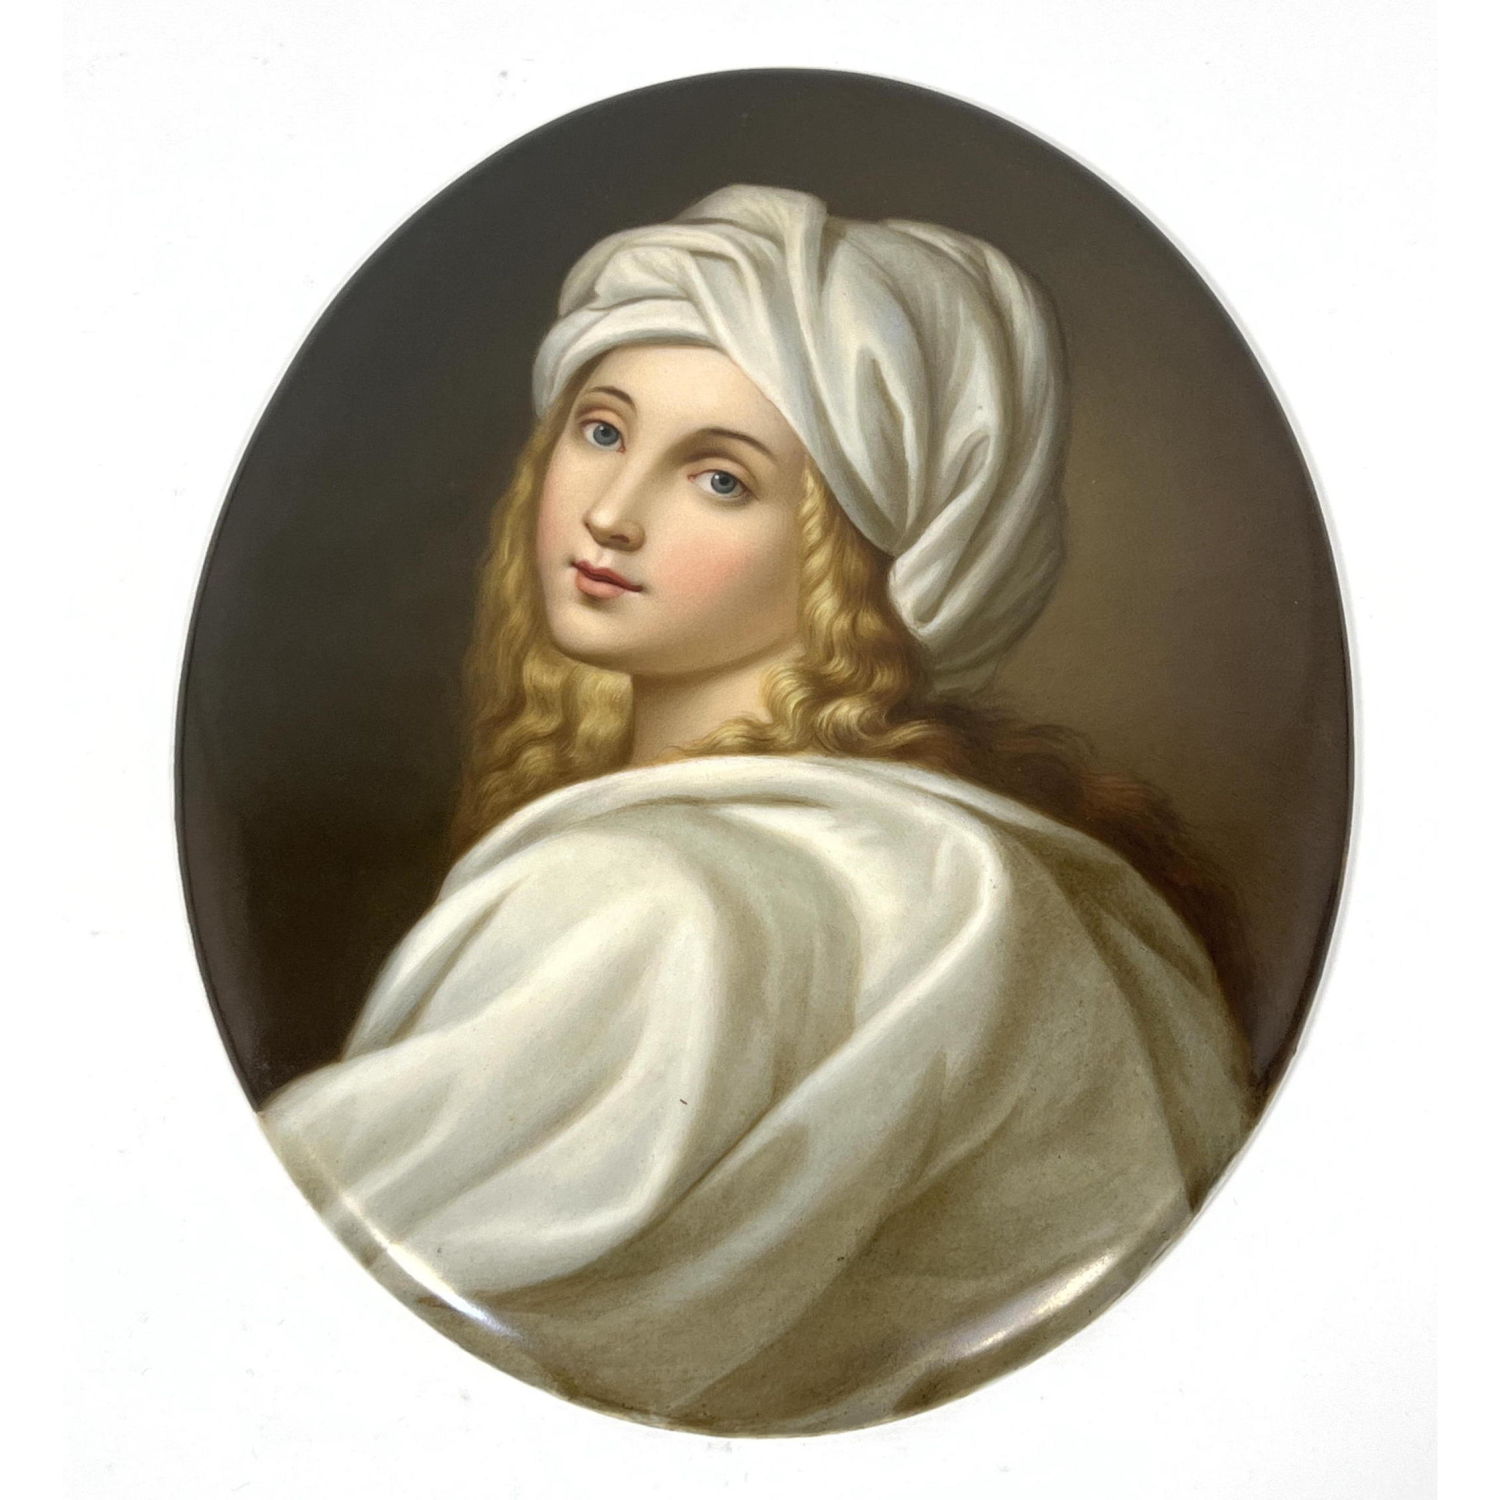 KPM Plaque portrait of blond woman